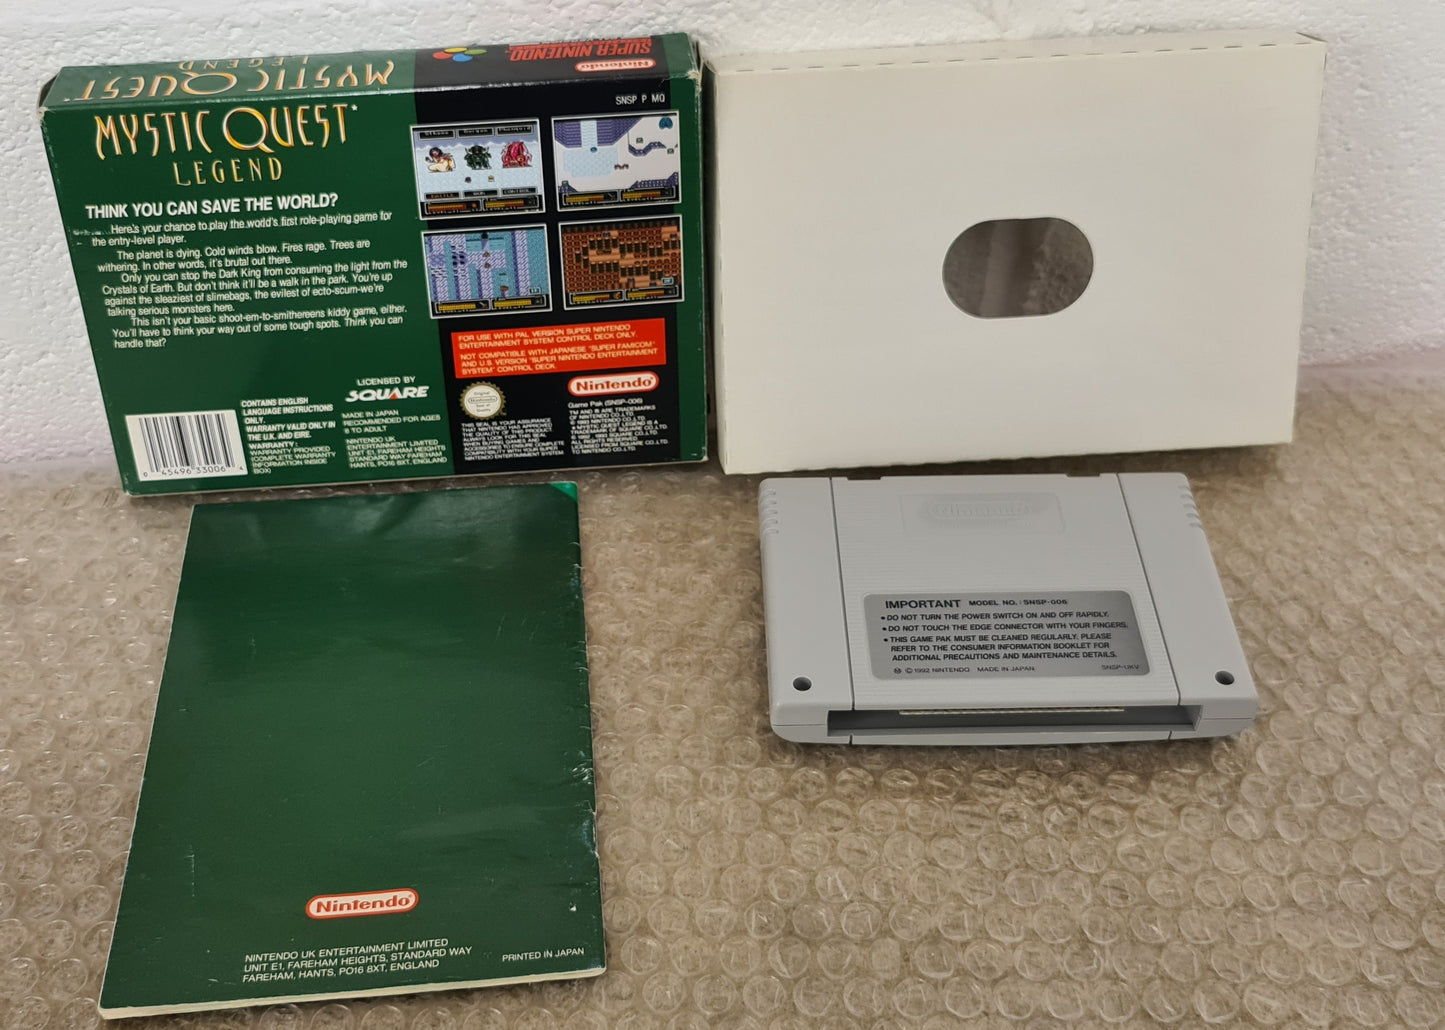 Mystic Quest Legend Super Nintendo Entertainment System (SNES) Game